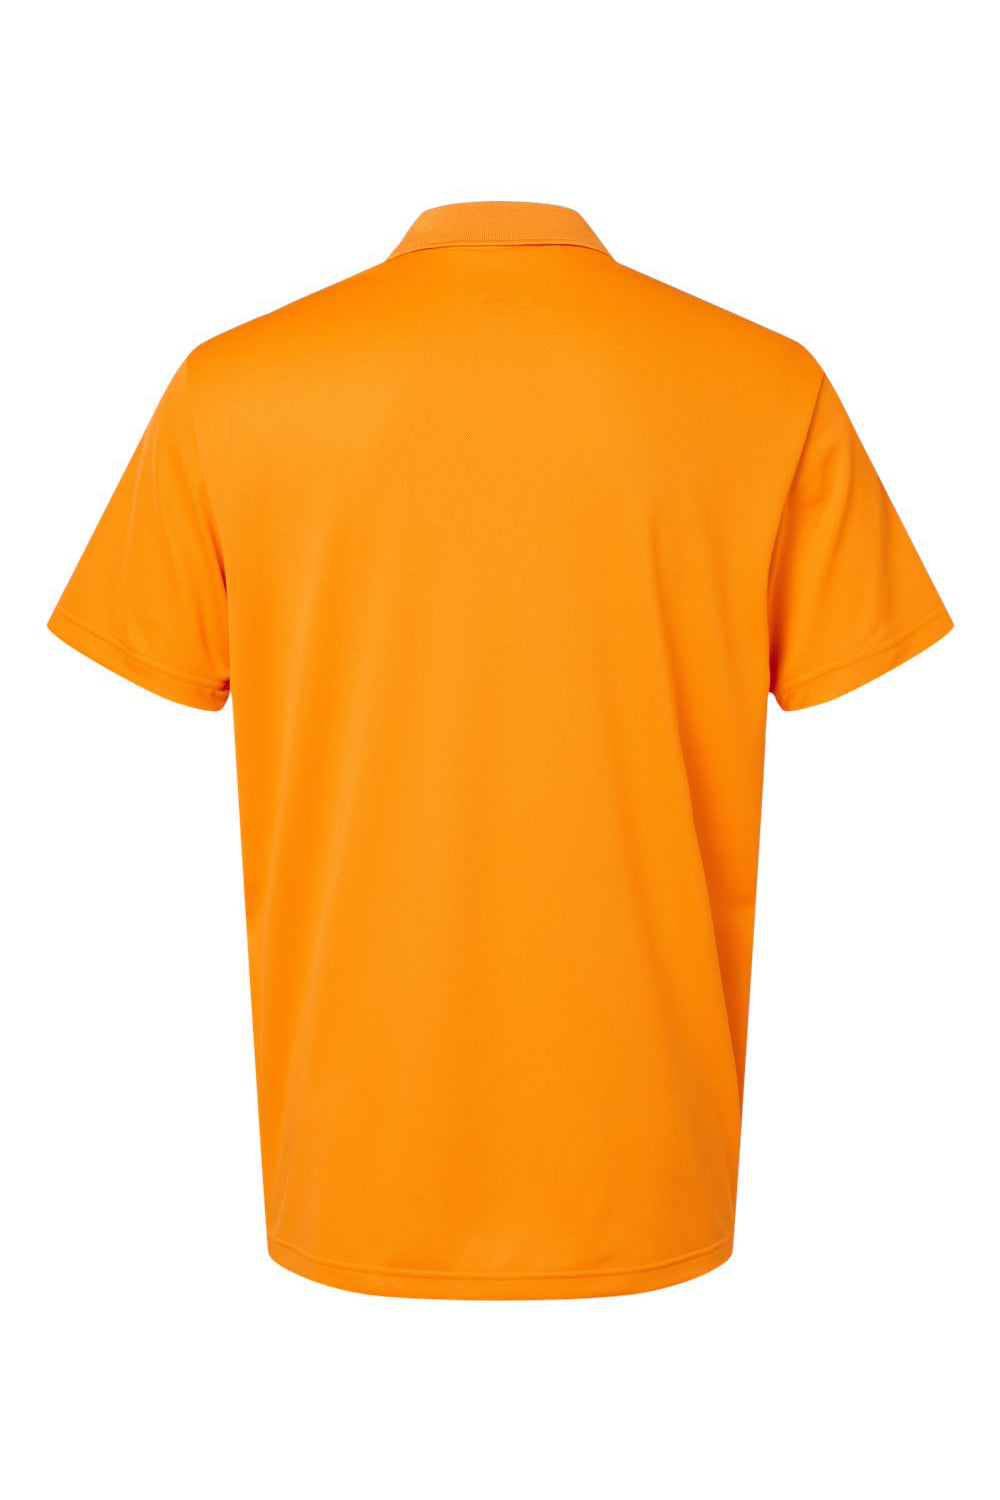 Adidas A430 Mens Basic Short Sleeve Polo Shirt Bright Orange Flat Back